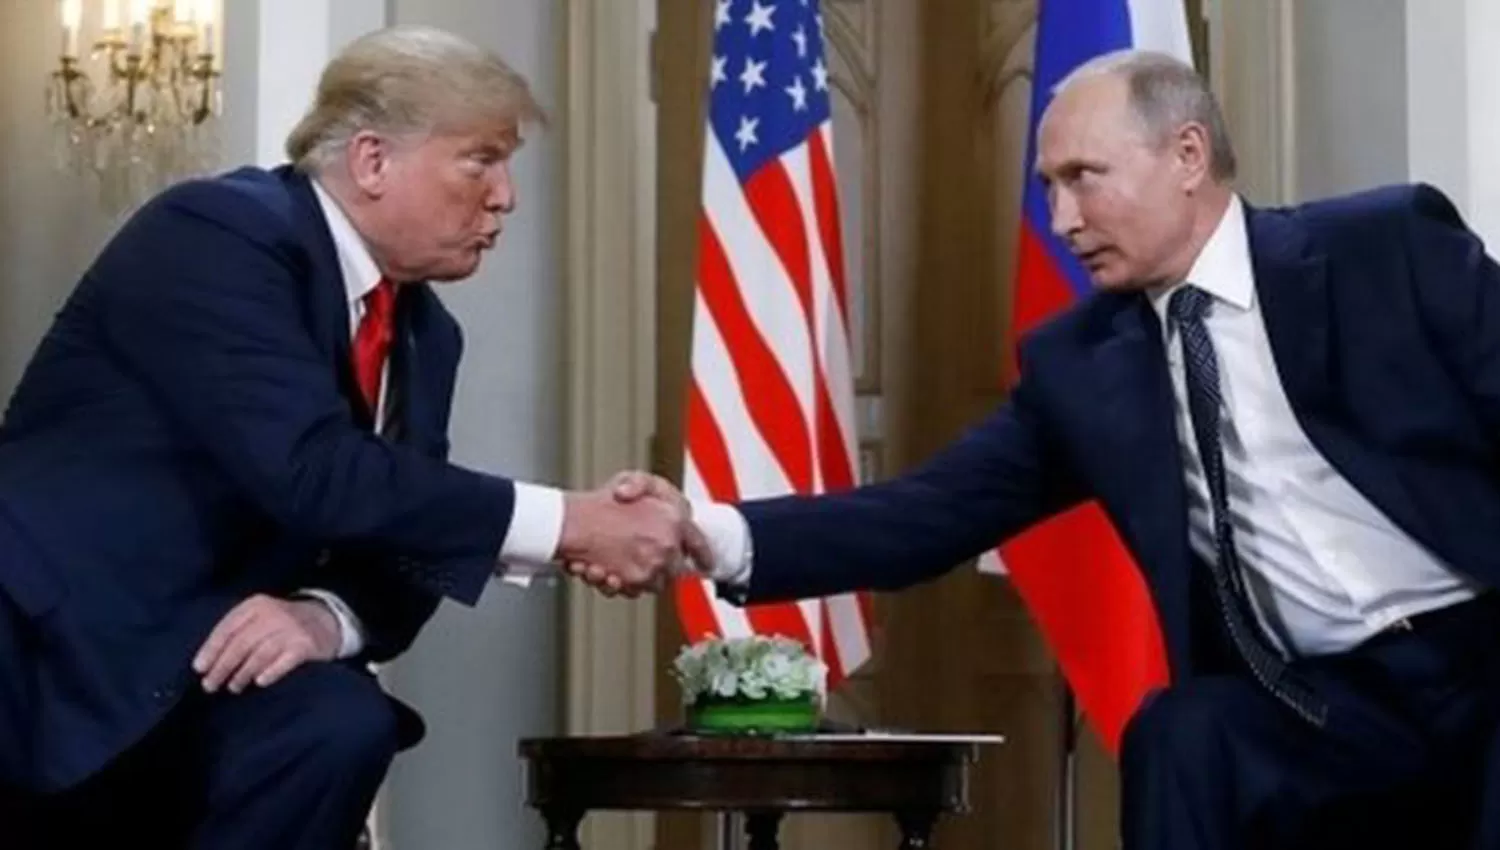 EN FINLANDIA. El último encuentro entre Trump y Putin.